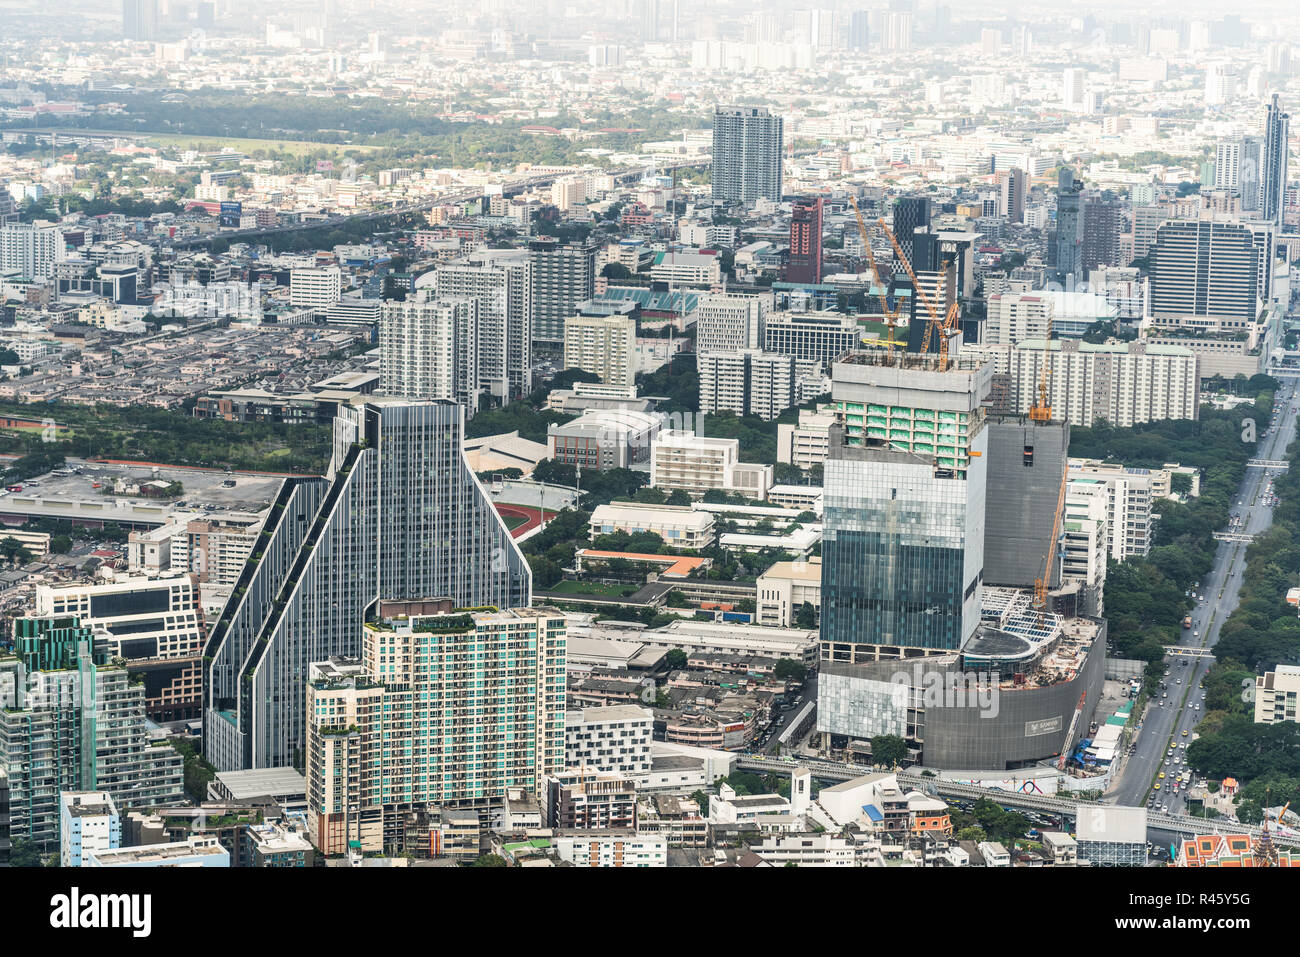 Bangkok, Thailand - 20.November 2018: Stadtbild Antenne top Blick auf hohe Gebäude, Wohnungen, Straßenverkehr und unter Baustelle in Bangkok. Stockfoto